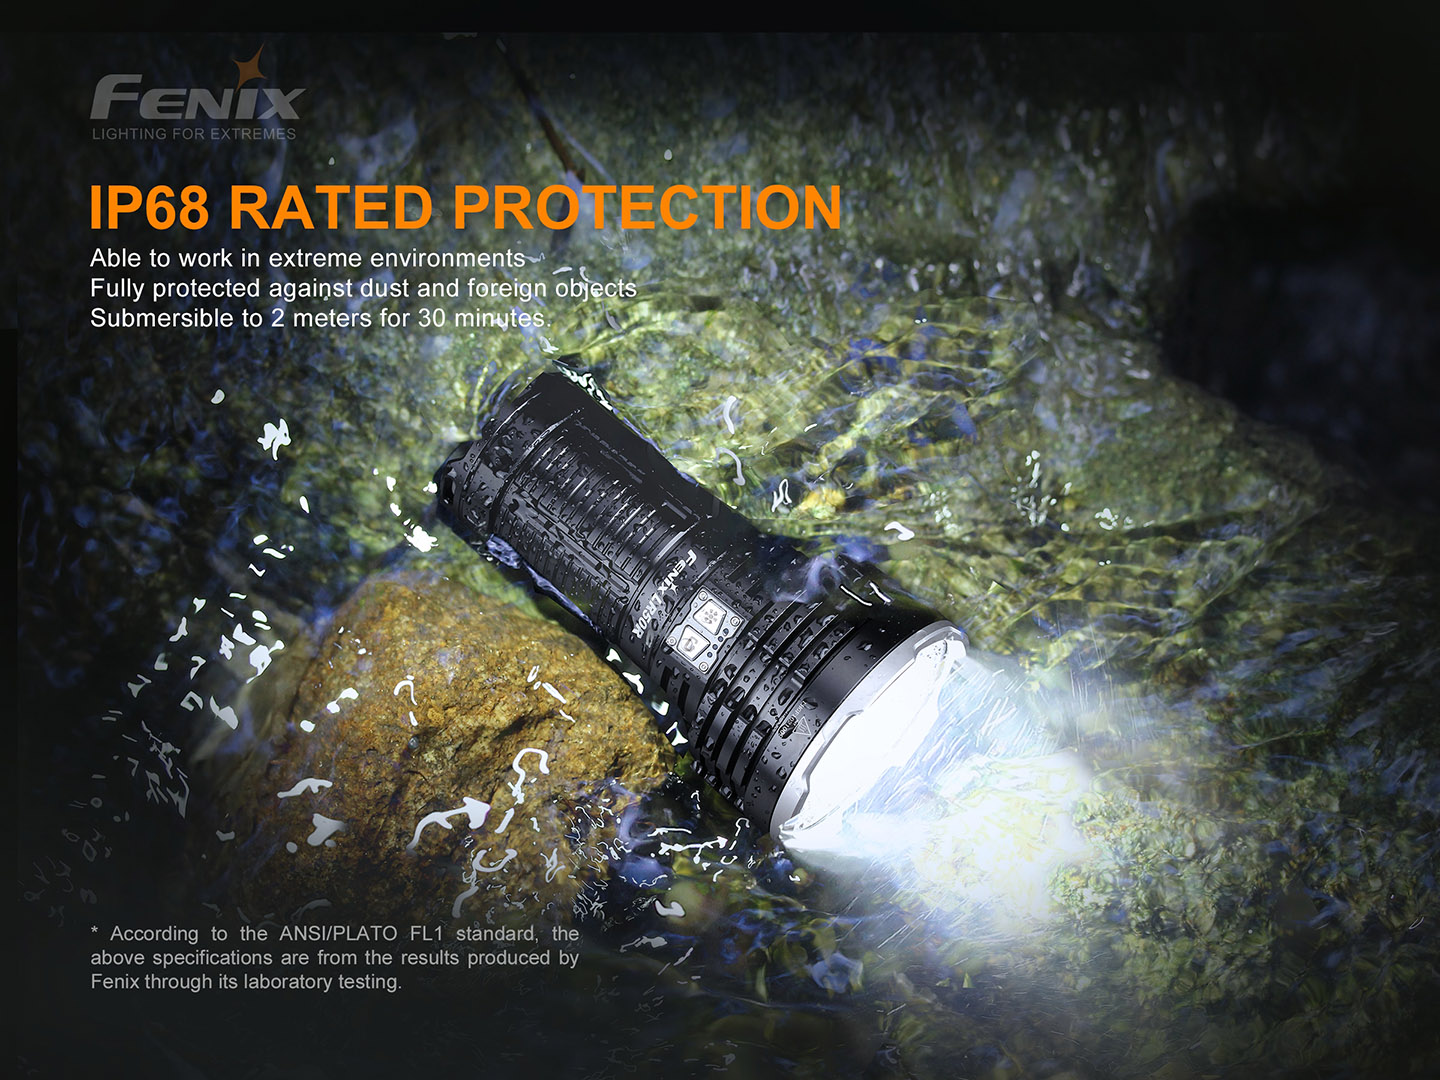 Fenix LR50R 12000lm 950m Flashlight Searchlight Rechargeable Fenix ​​LR50R adalah senter super terang yang dibuat untuk aktivitas menjelajah dan search & rescue. Senter Fenix ​​LR50R memancarkan output yang benar-benar luar biasa sebesar 12000 lumens. Dengan visibilitas sinar hingga 950 meter, dapat digunakan untuk menemukan objek apa pun dalam kegelapan. Sakelar samping baja tahan karat ganda memungkinkan anda dengan cepat mengaktifkan dan mengakses enam tingkat kecerahan umum dan mode fungsional, termasuk instan turbo, strobe, dan SOS. Dengan port pengisi daya USB Type-C yang disertakan, anda dapat mengisi daya Fenix ​​LR50R dengan cepat dalam hitungan jam, atau menggunakan fungsi discharge untuk mengisi daya perangkat anda yang lain Fungsi brightness downshifting sensor dirancang untuk menghindari suhu tinggi pada pencahayaan jarak dekat. Pemilihan mode yang mudah, untuk mudah beradaptasi dengan lingkungan anda, senter ini adalah alat yang sempurna untuk menjelajah, dan misi search & rescue.